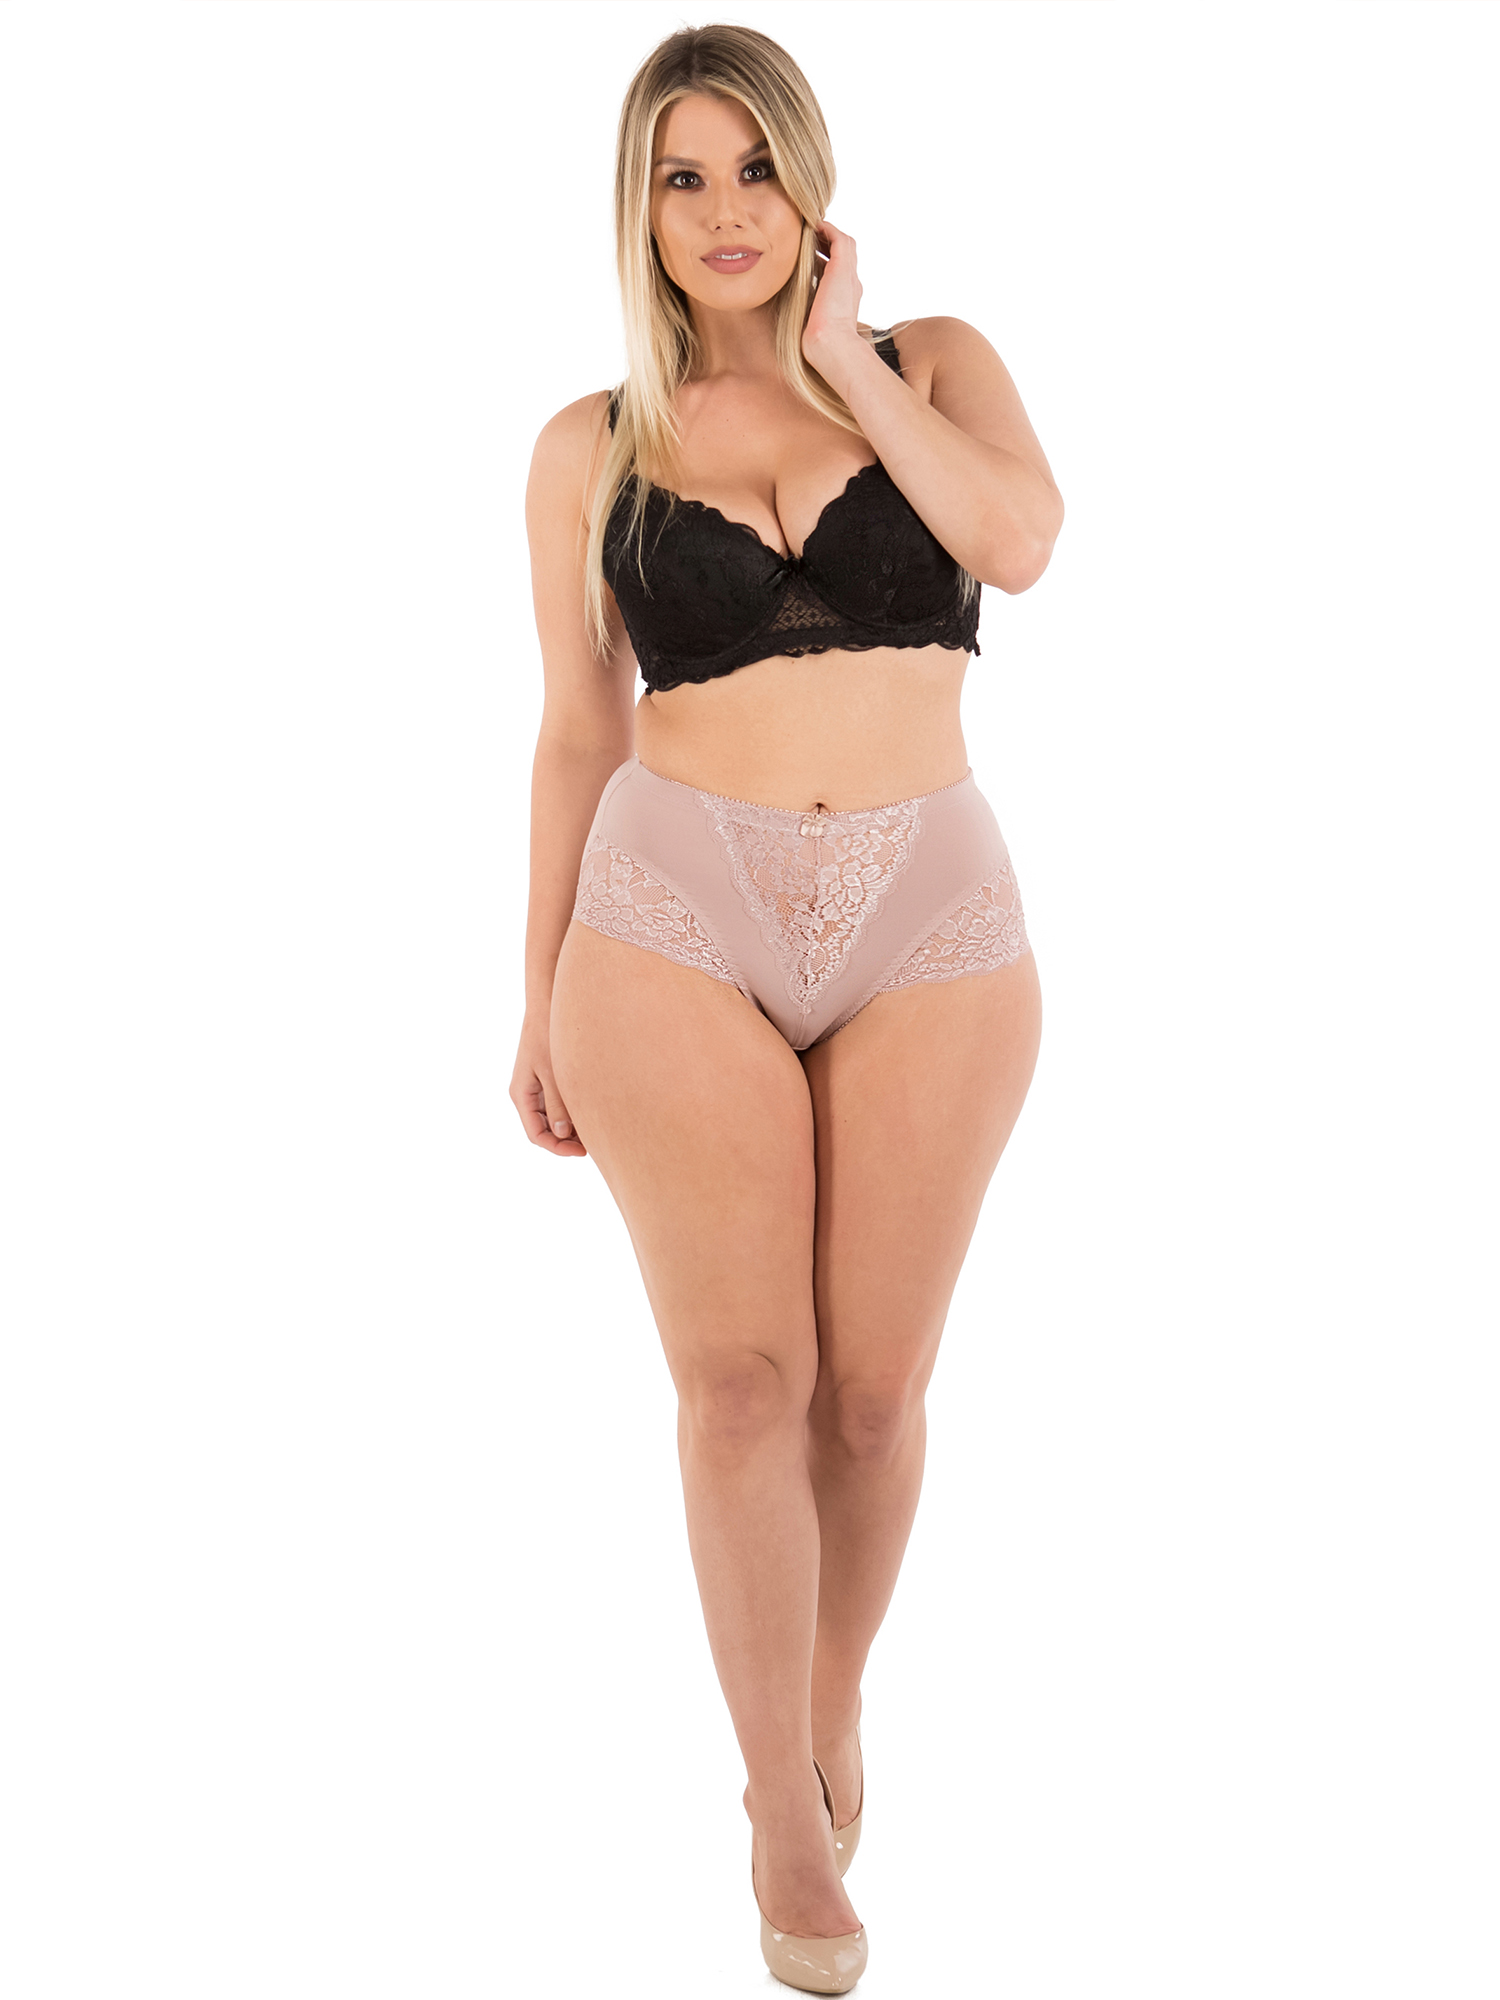 Barbra Womens Underwear Light Control Full Coverage Girdle Panties 6 Pack Ebay 6372